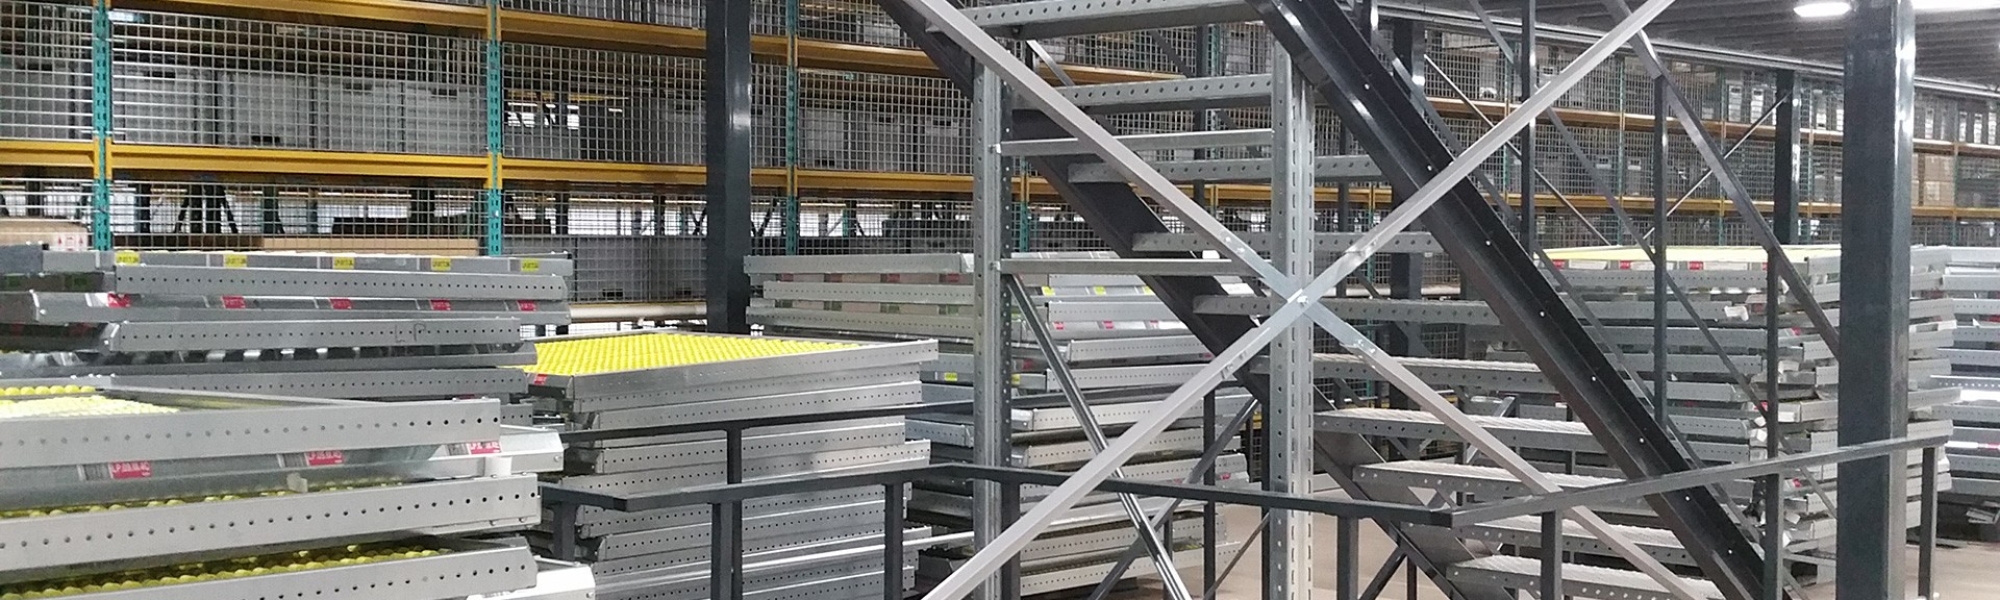 Escalier métallique installé au sein d’un techno centre Renault
											